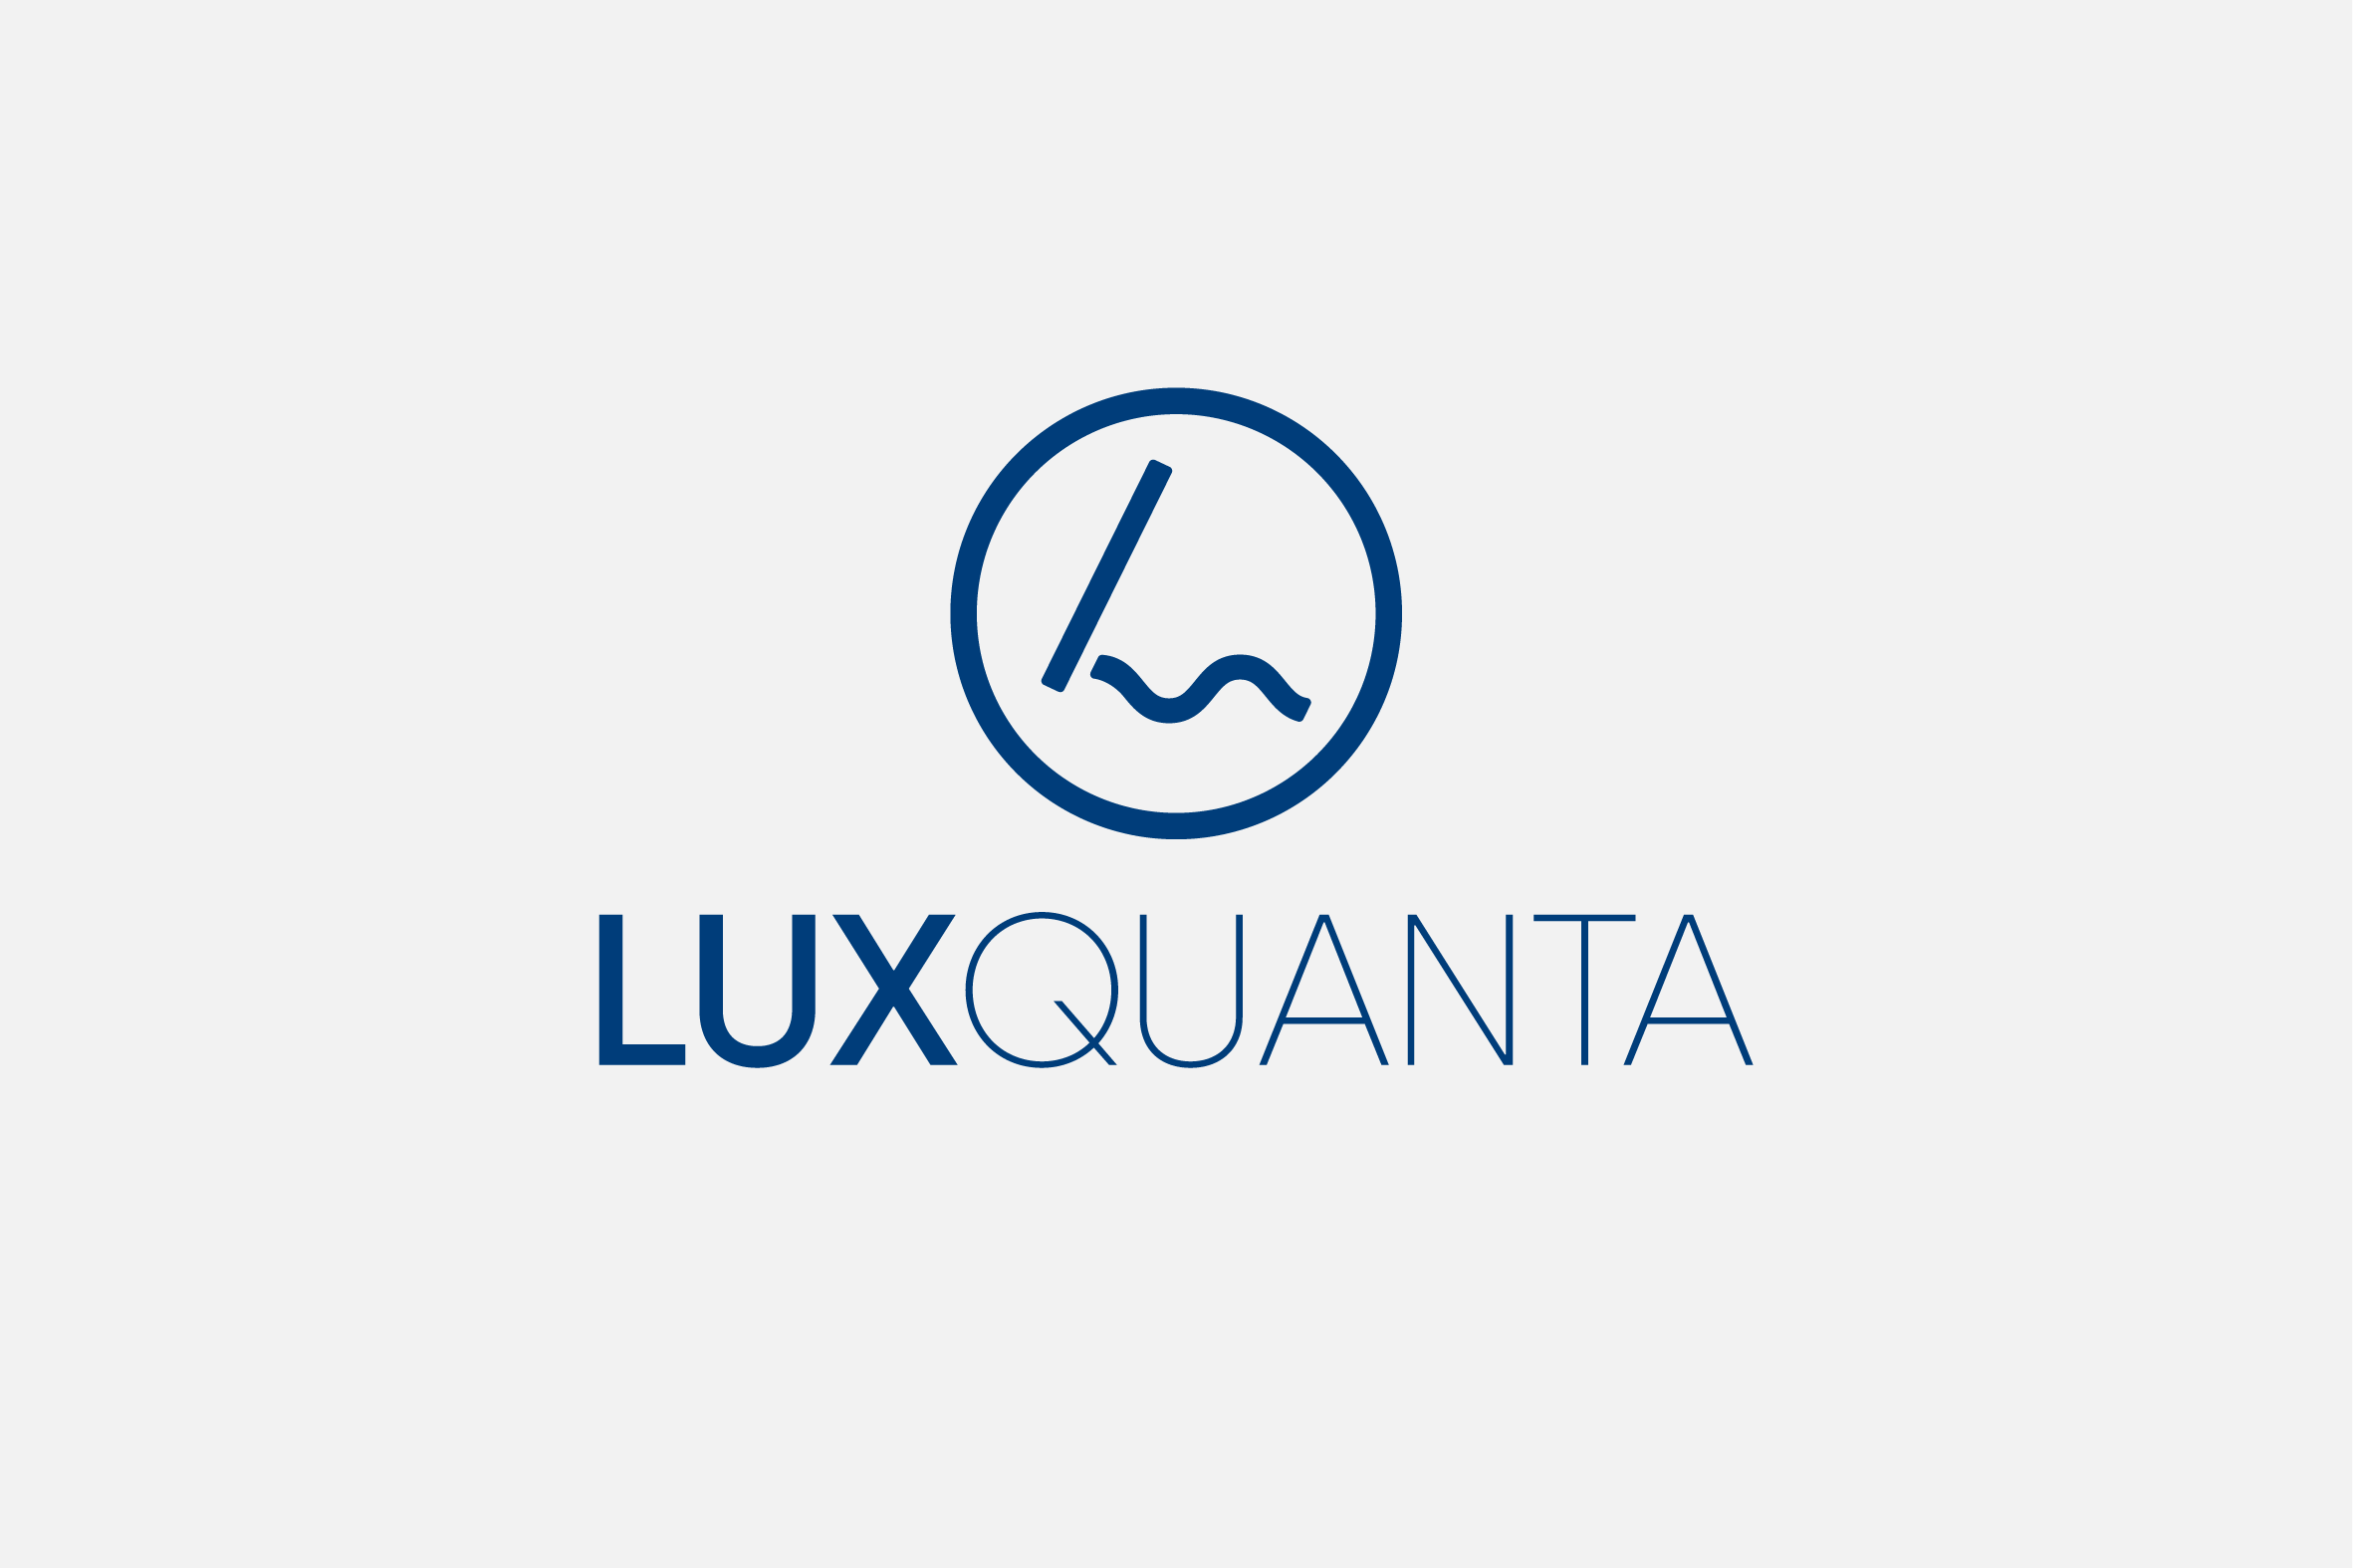 Luxquanta - Grafisk design för vetenskap och teknik